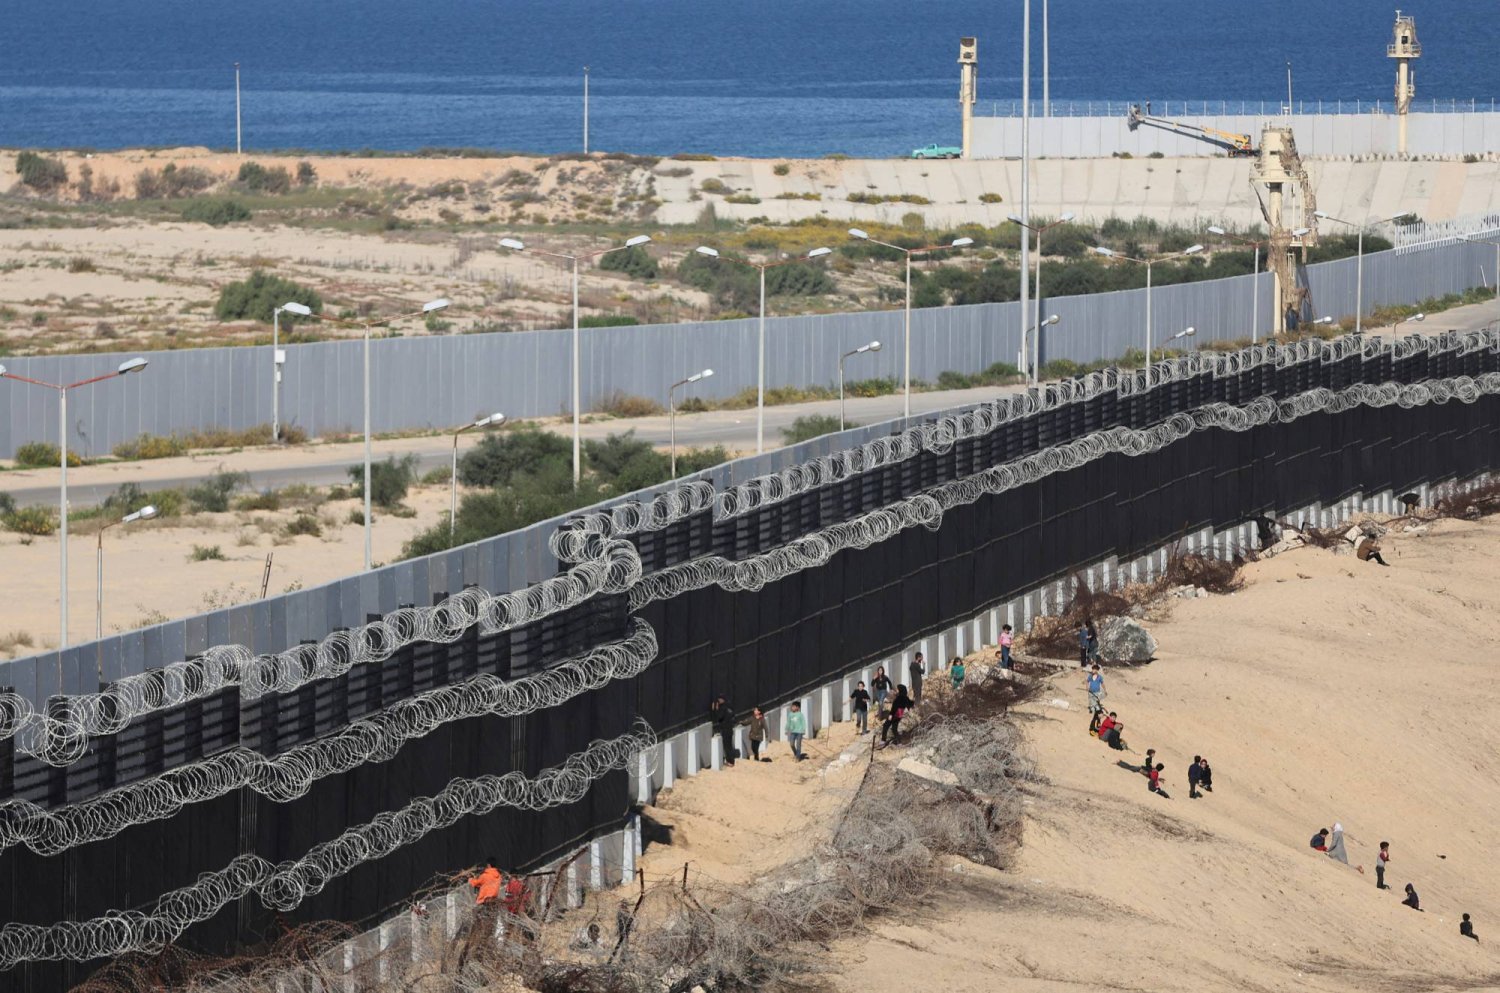 الجدران الإسمنتية التي بنتها مصر على الحدود مع غزة خوفا من تدفق الفلسطينيين إلى مصر